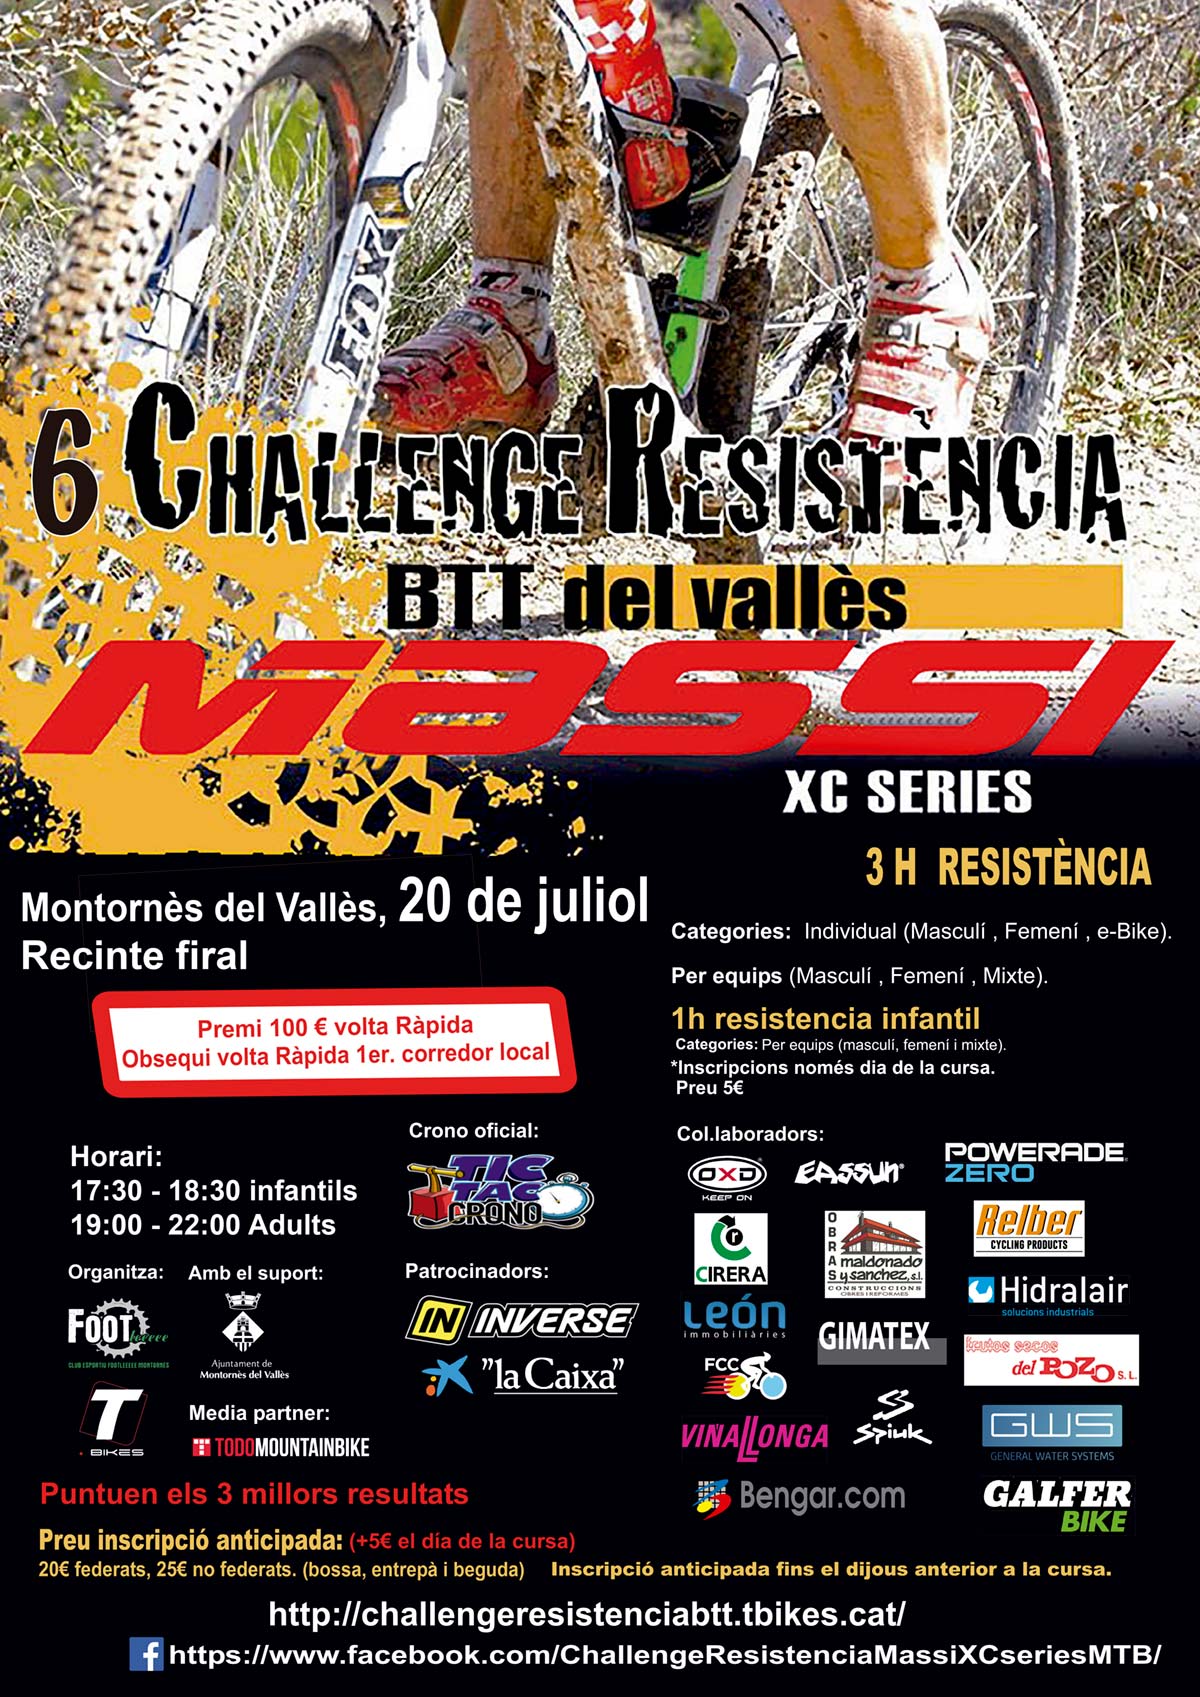 La sexta edición de la Challenge Resistencia Massi XC Series arranca en Montornés del Vallés